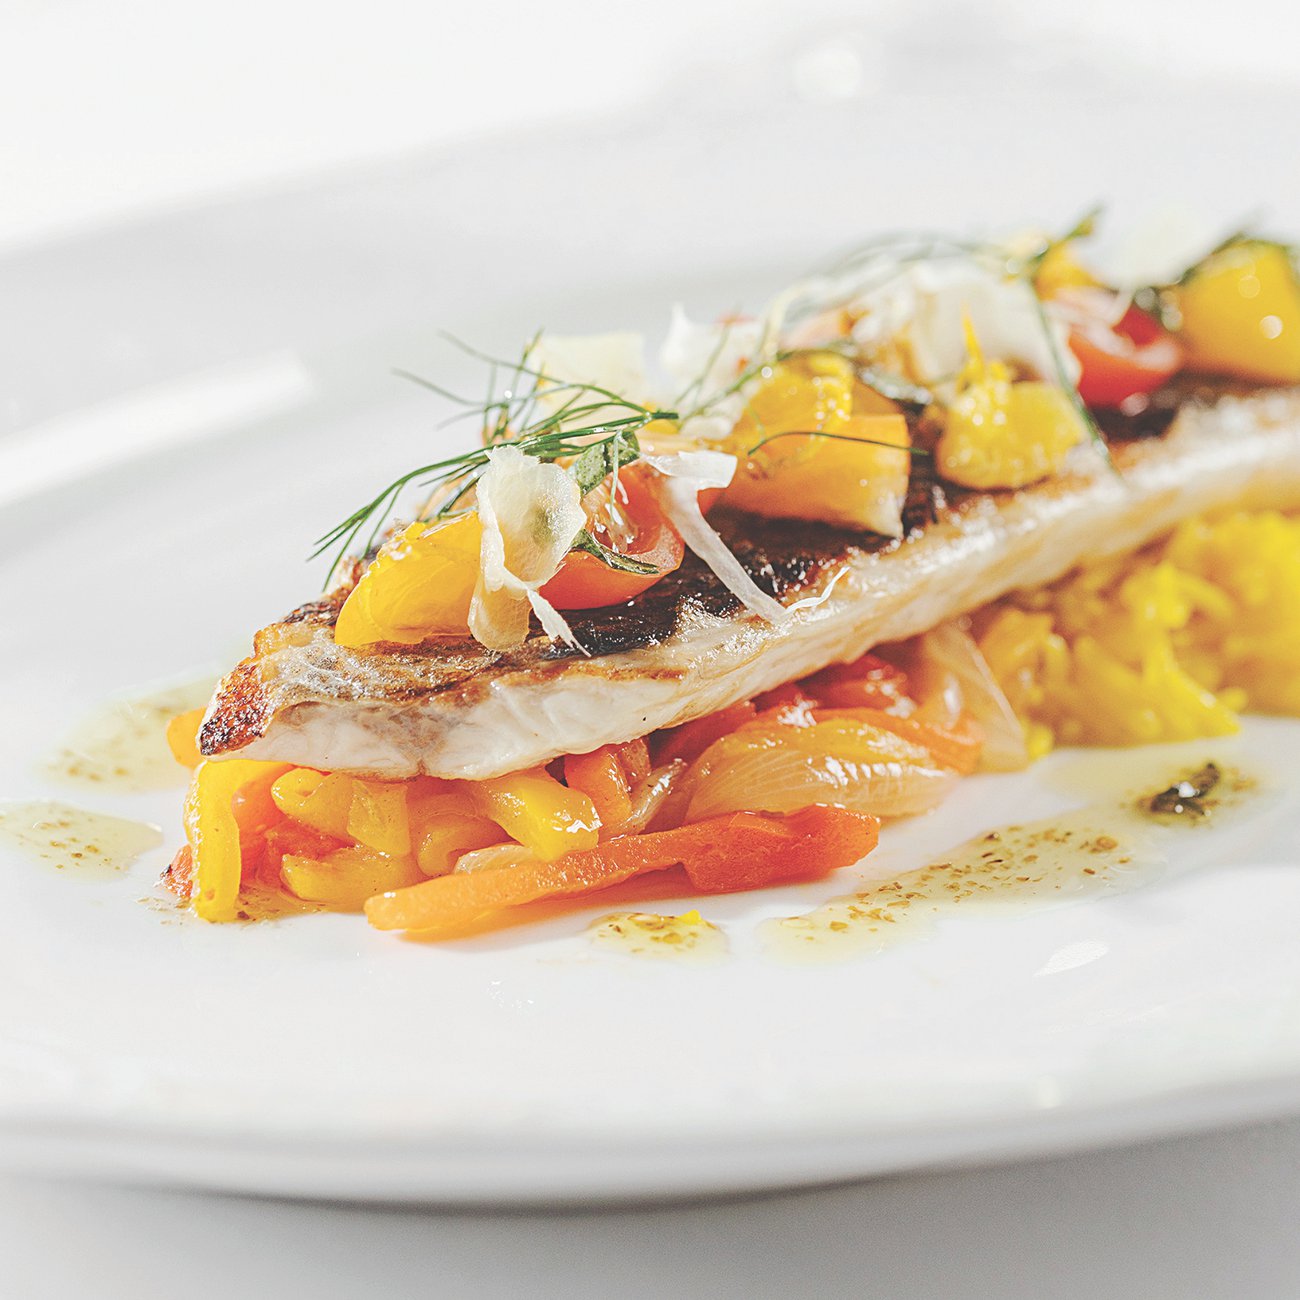 The lightest, freshest fish at Brasserie Boulud